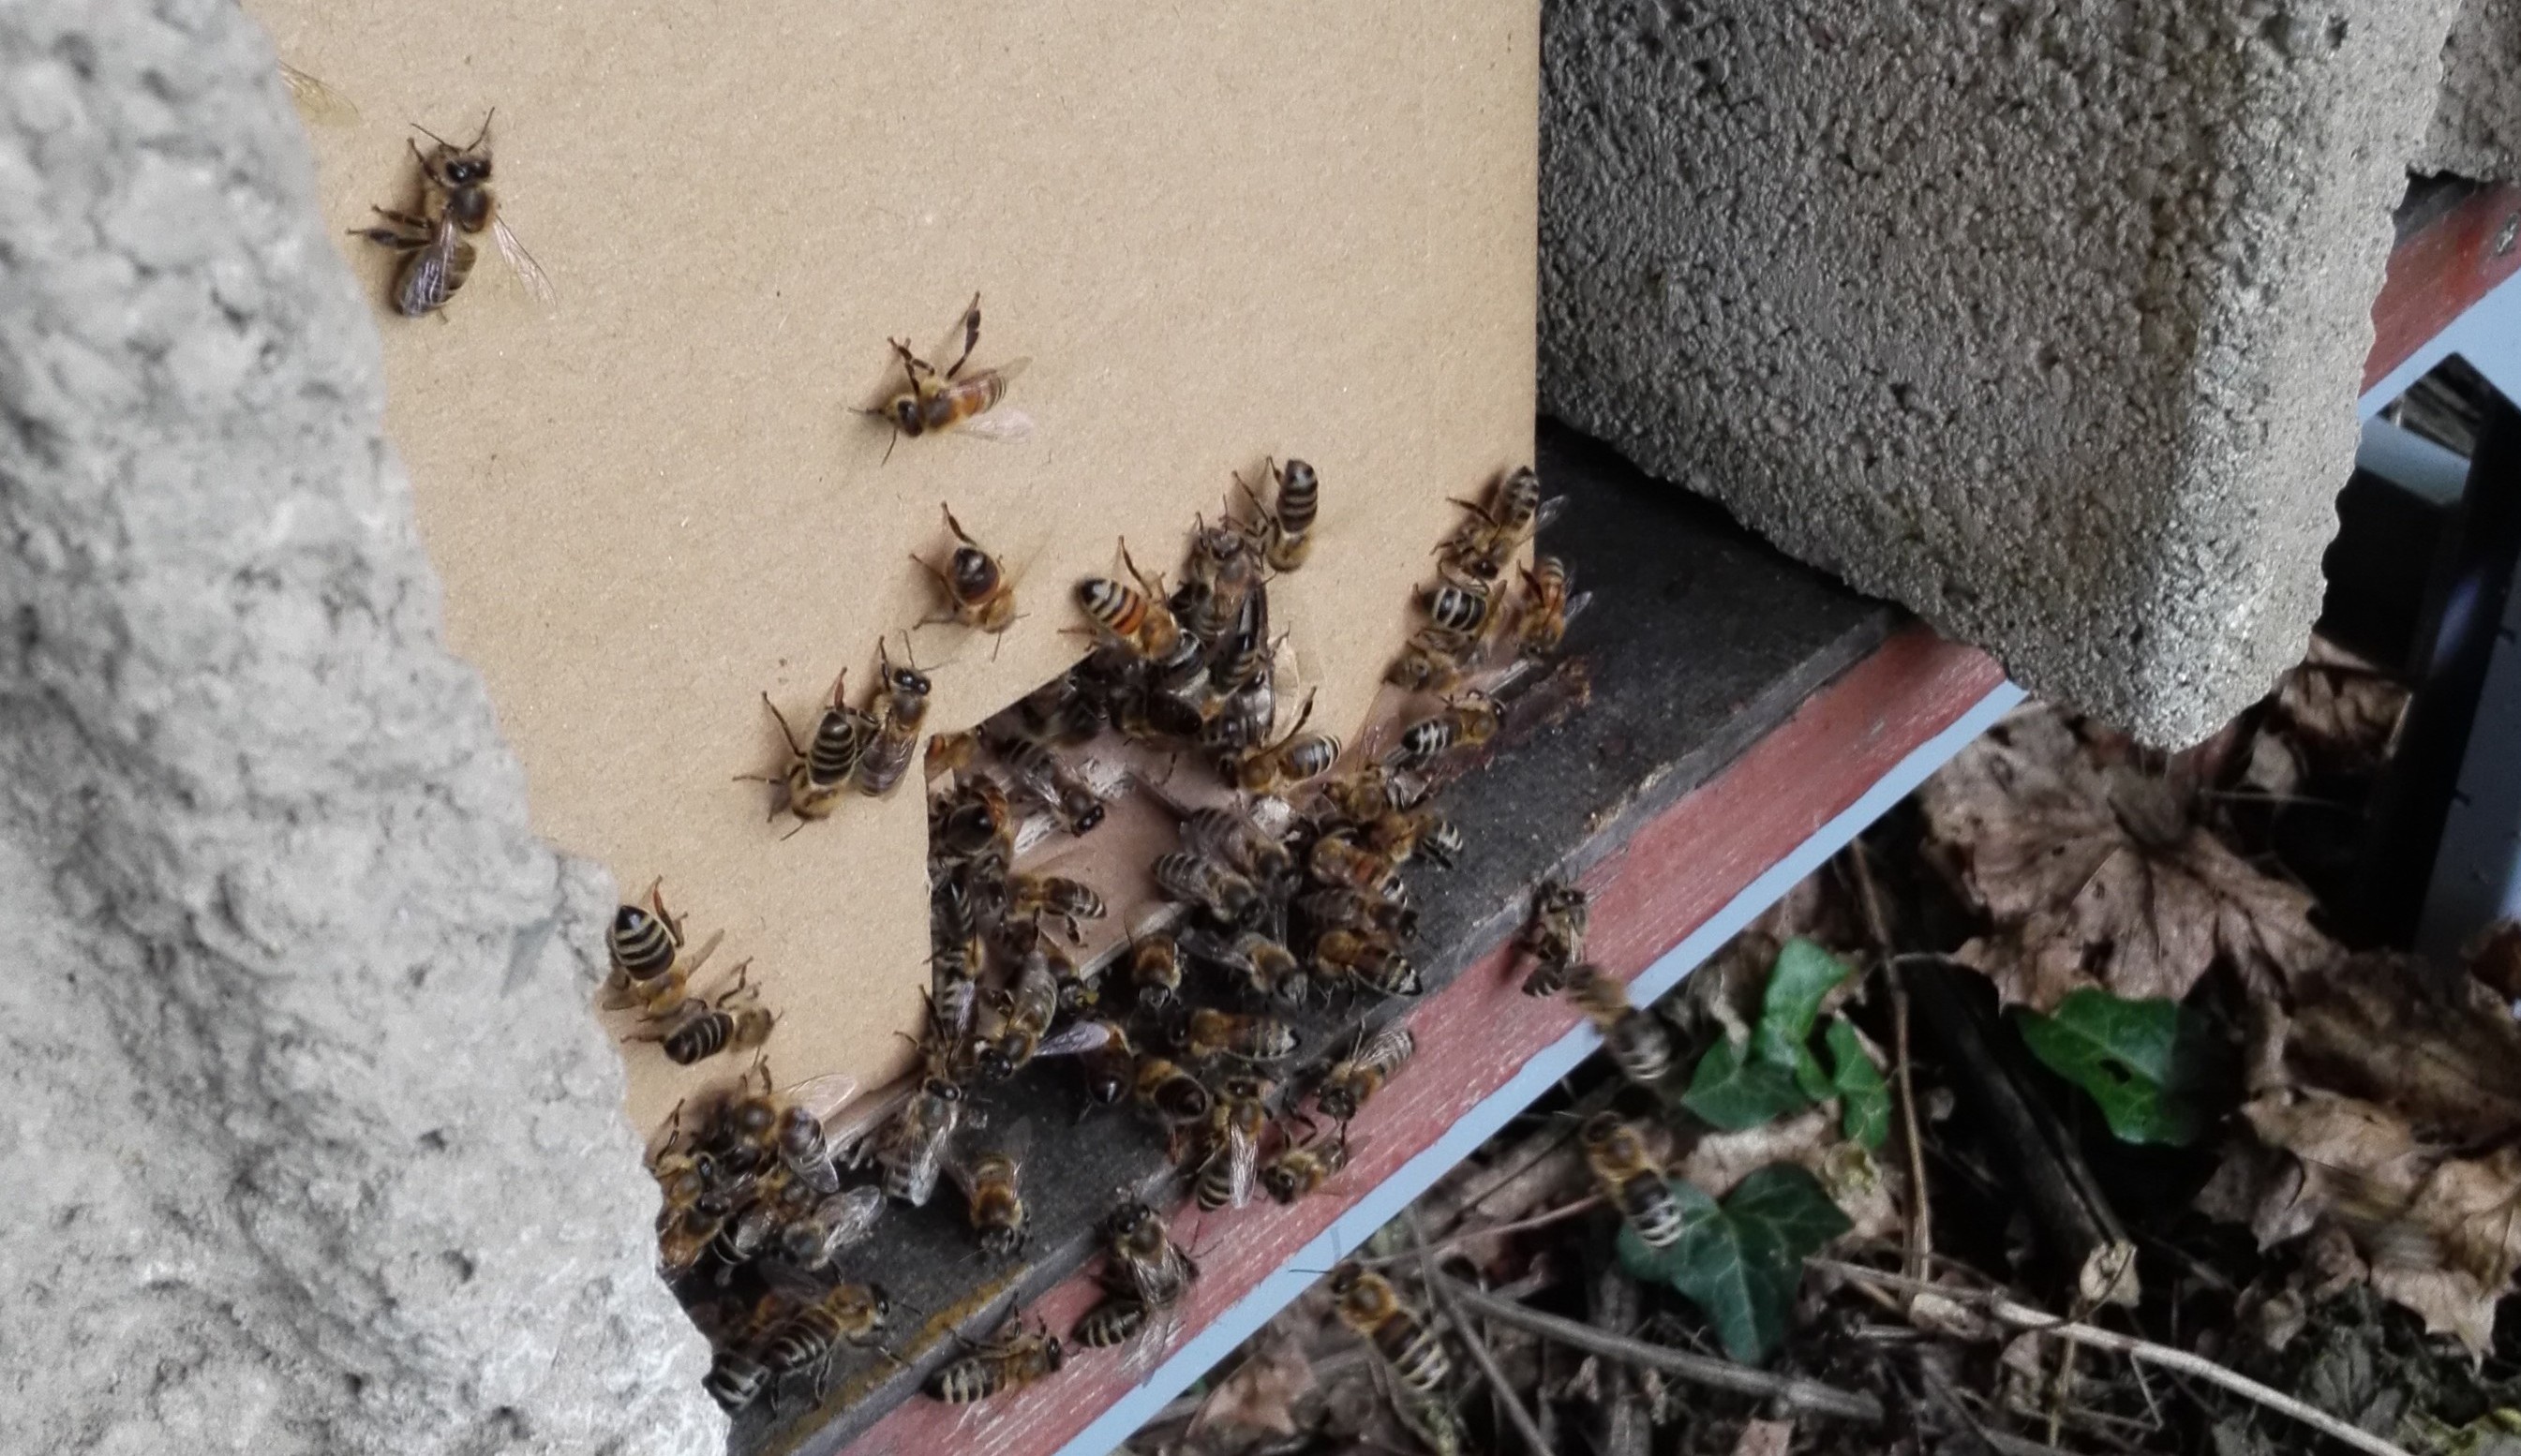 Bienenschwarm in Karton mit kleiner Flugöffnung